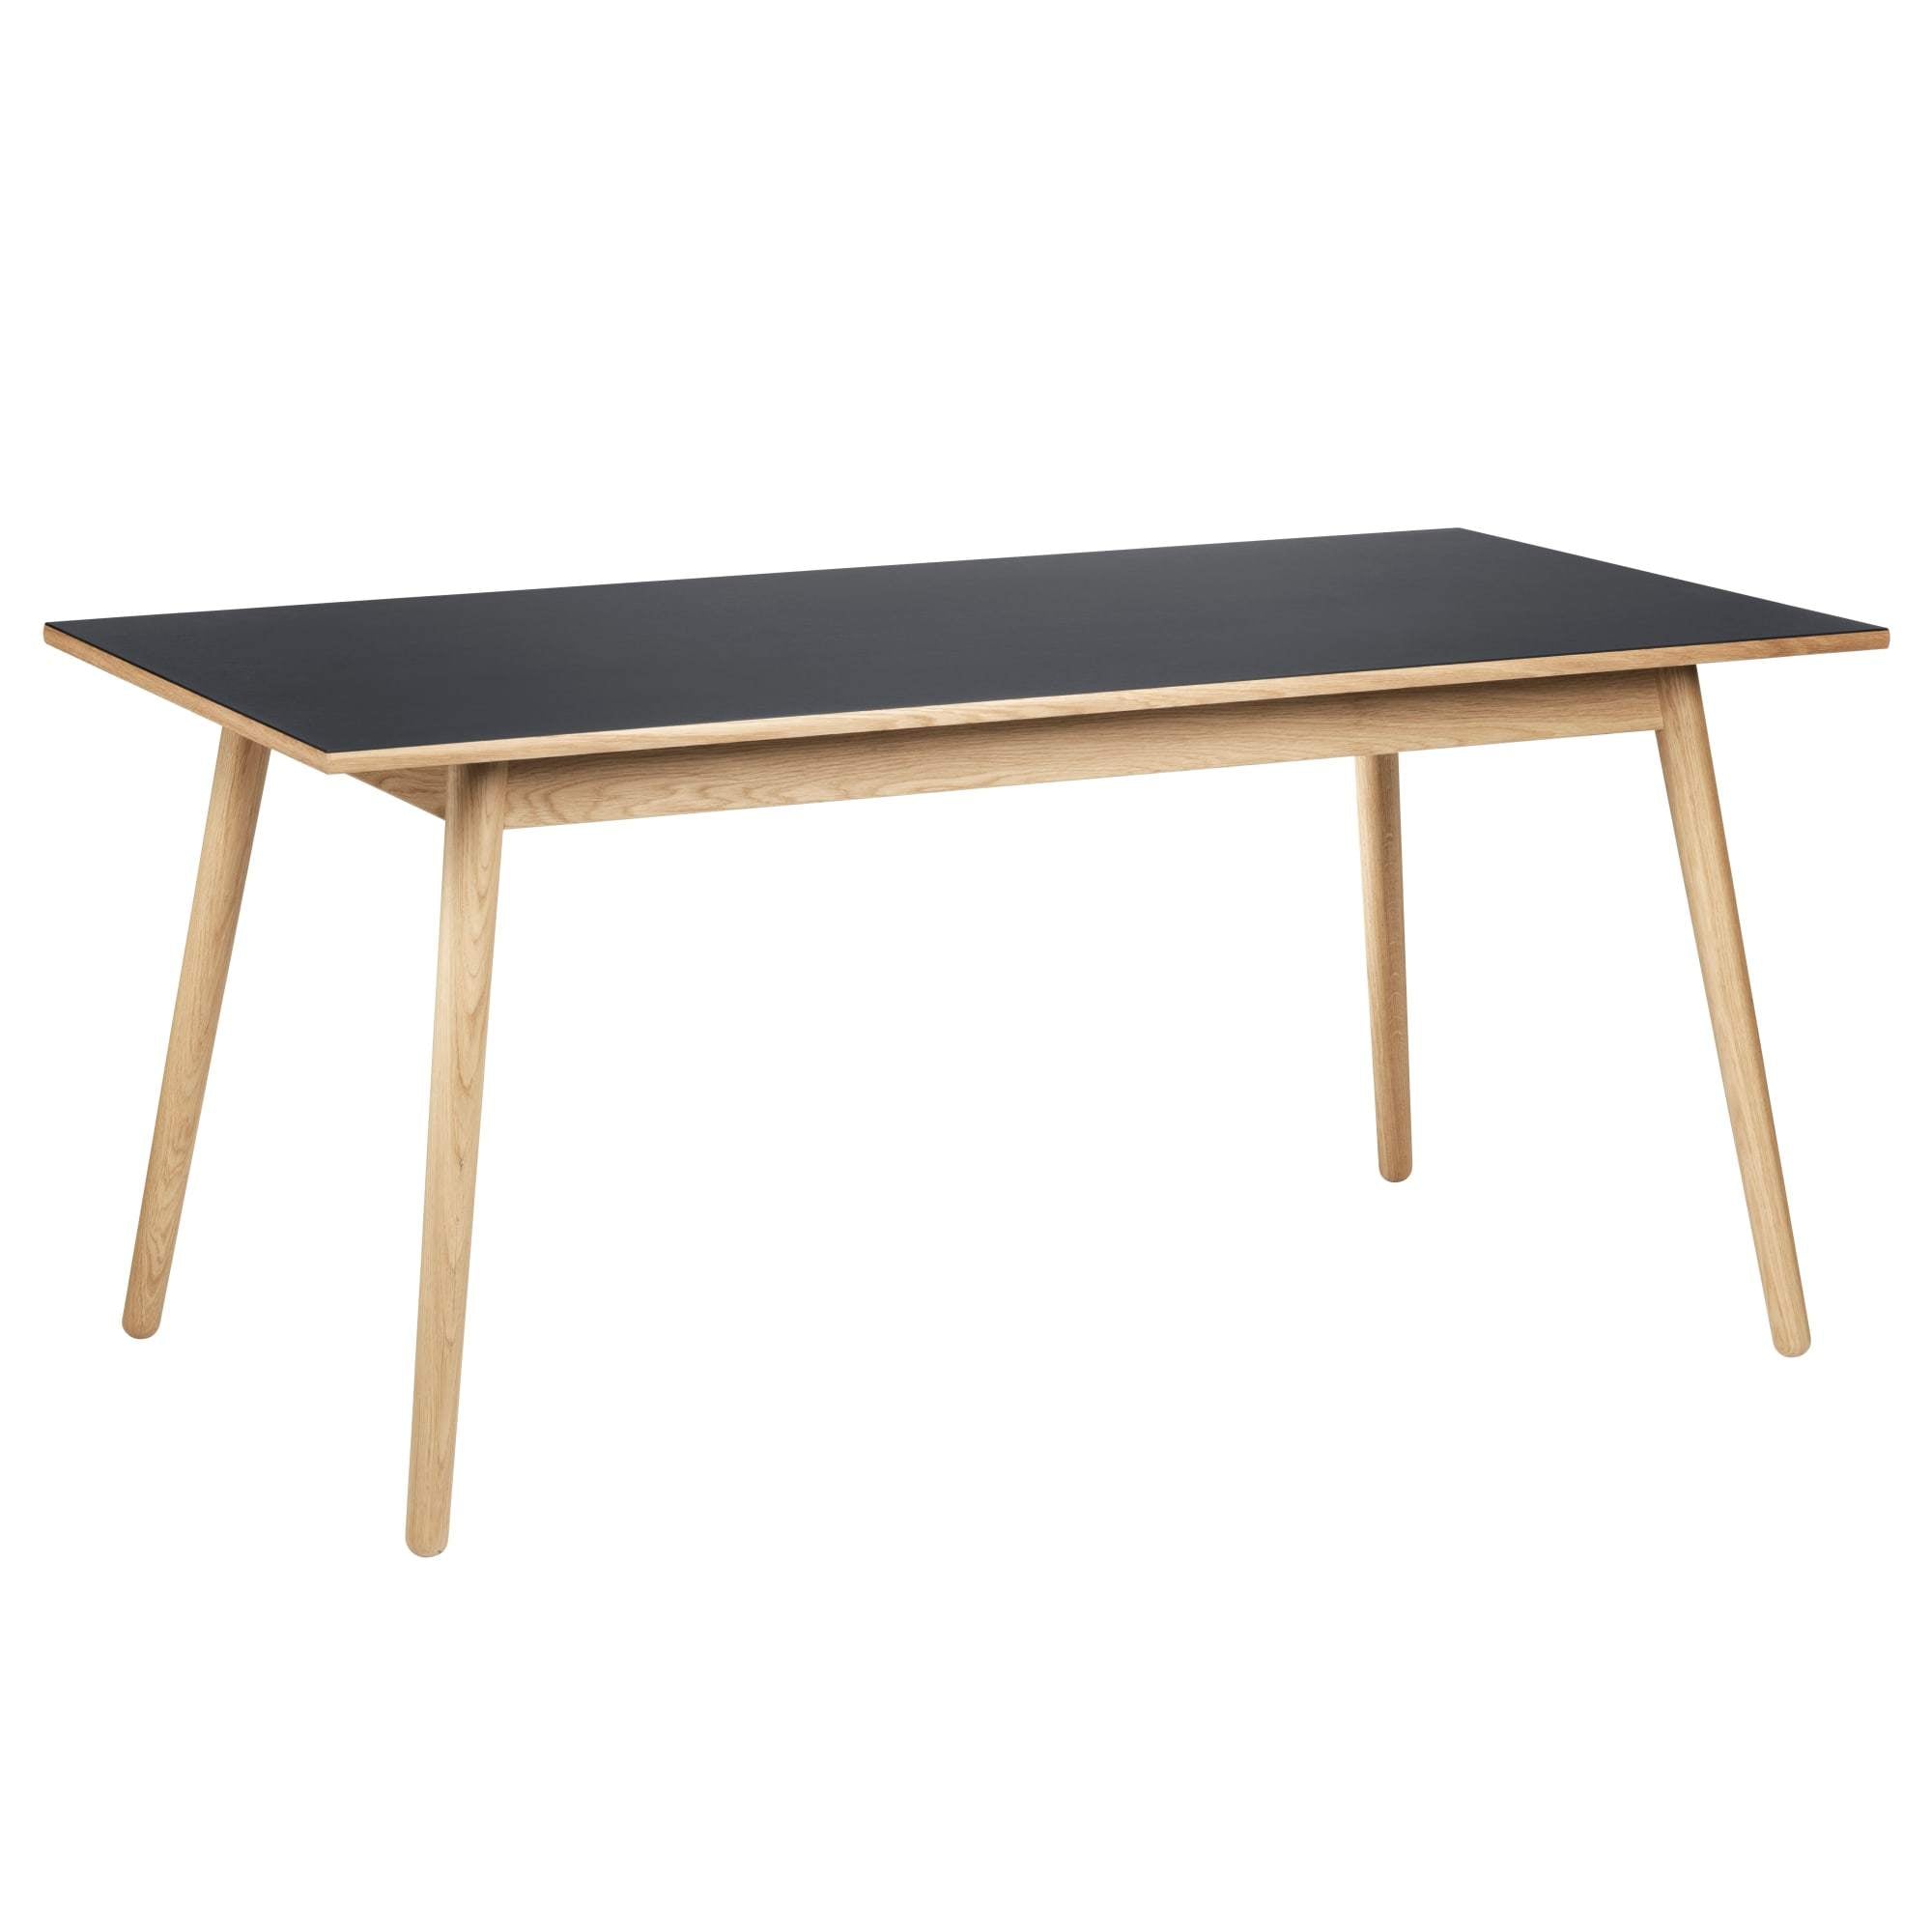 Fdb Møbler C35 B matbord ek, mörkgrå linoleum, 160 cm